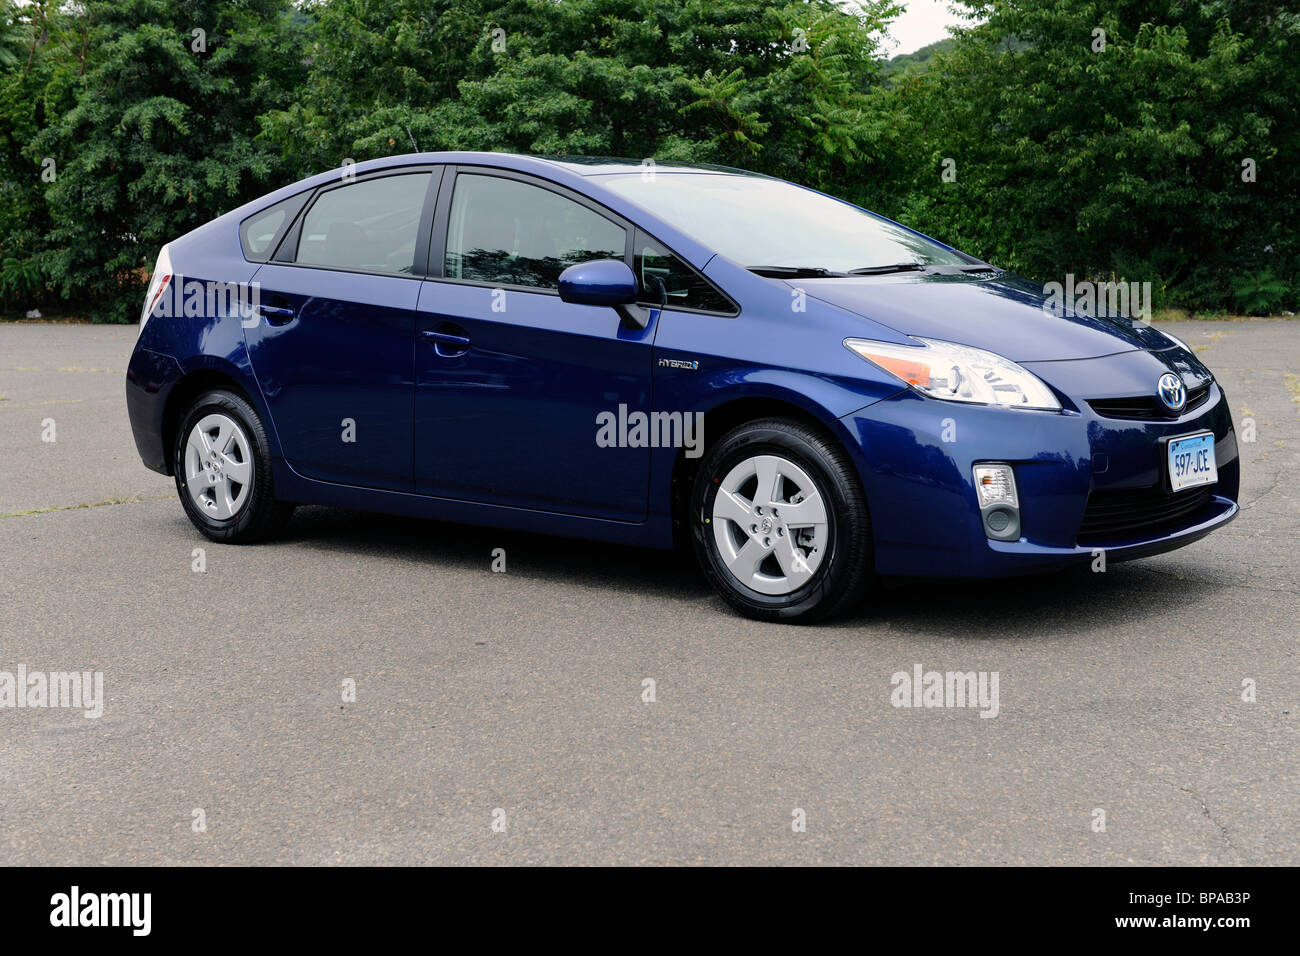 Nuovo 2010 Toyota Prius ibrida auto, in Blue Ribbon colore metallico. 8/21/10 Foto Stock